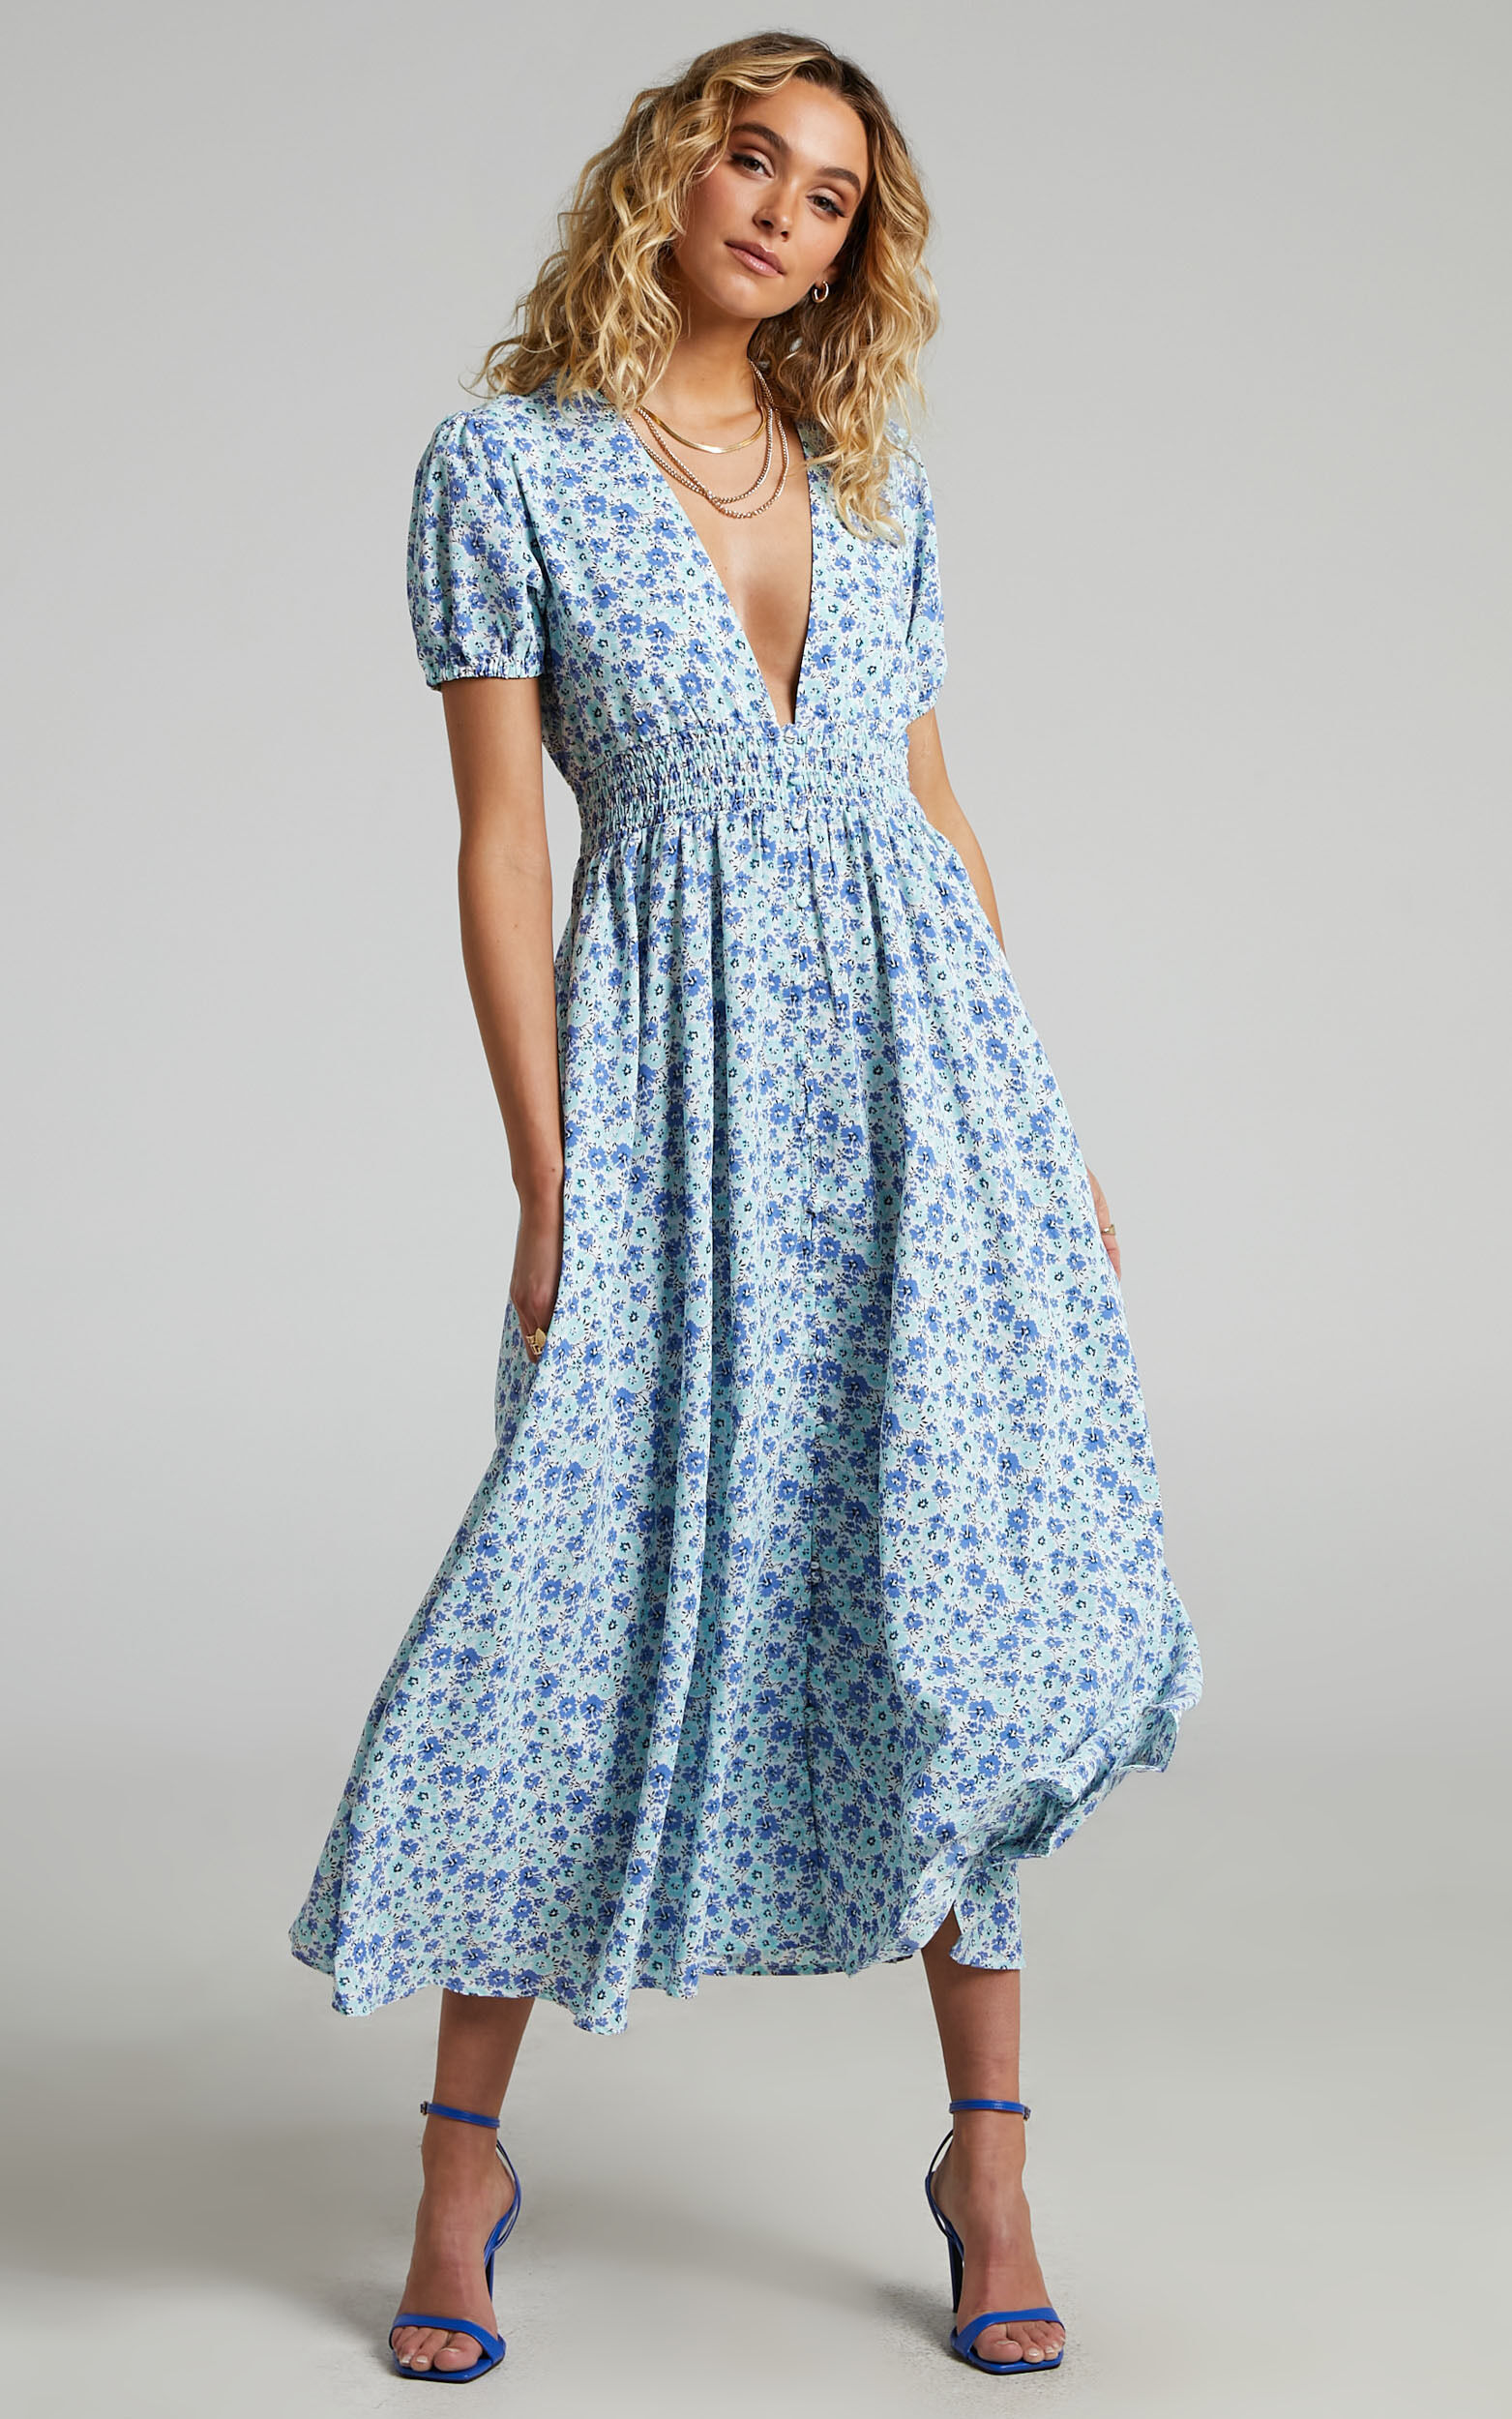 Elenita Short Sleeve Shirred Waist Maxi Dress in Blue Floral - 04, BLU1, super-hi-res image number null